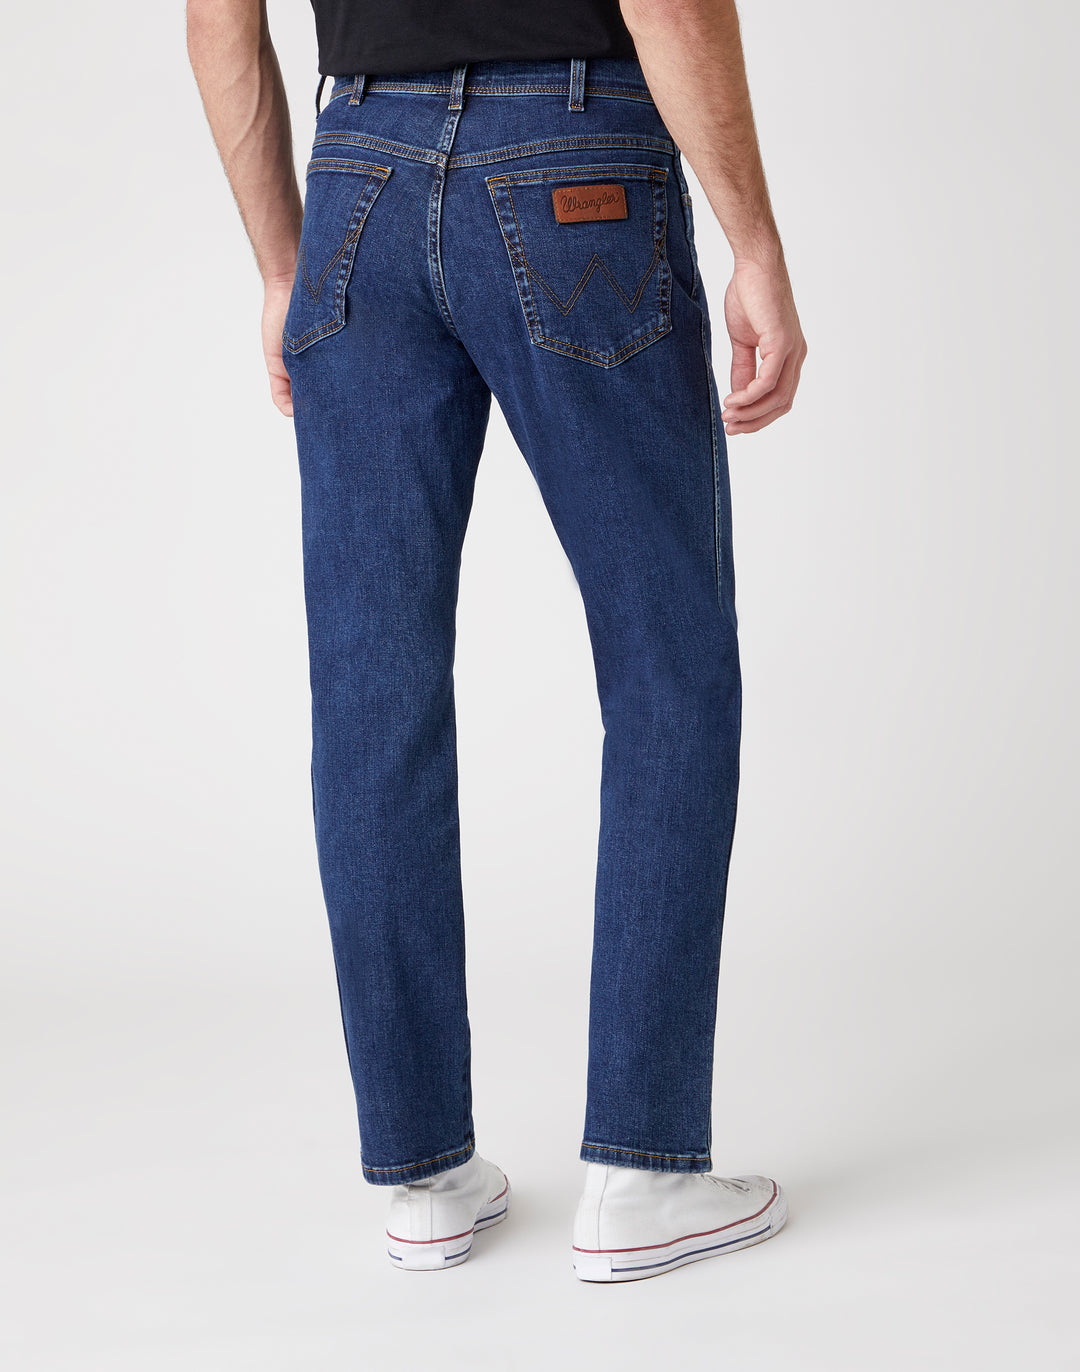 Wrangler Texas stretch 5-pocket donkerblauw darkstone dark stone jeans spijkerbroek modern  regular regular-fit